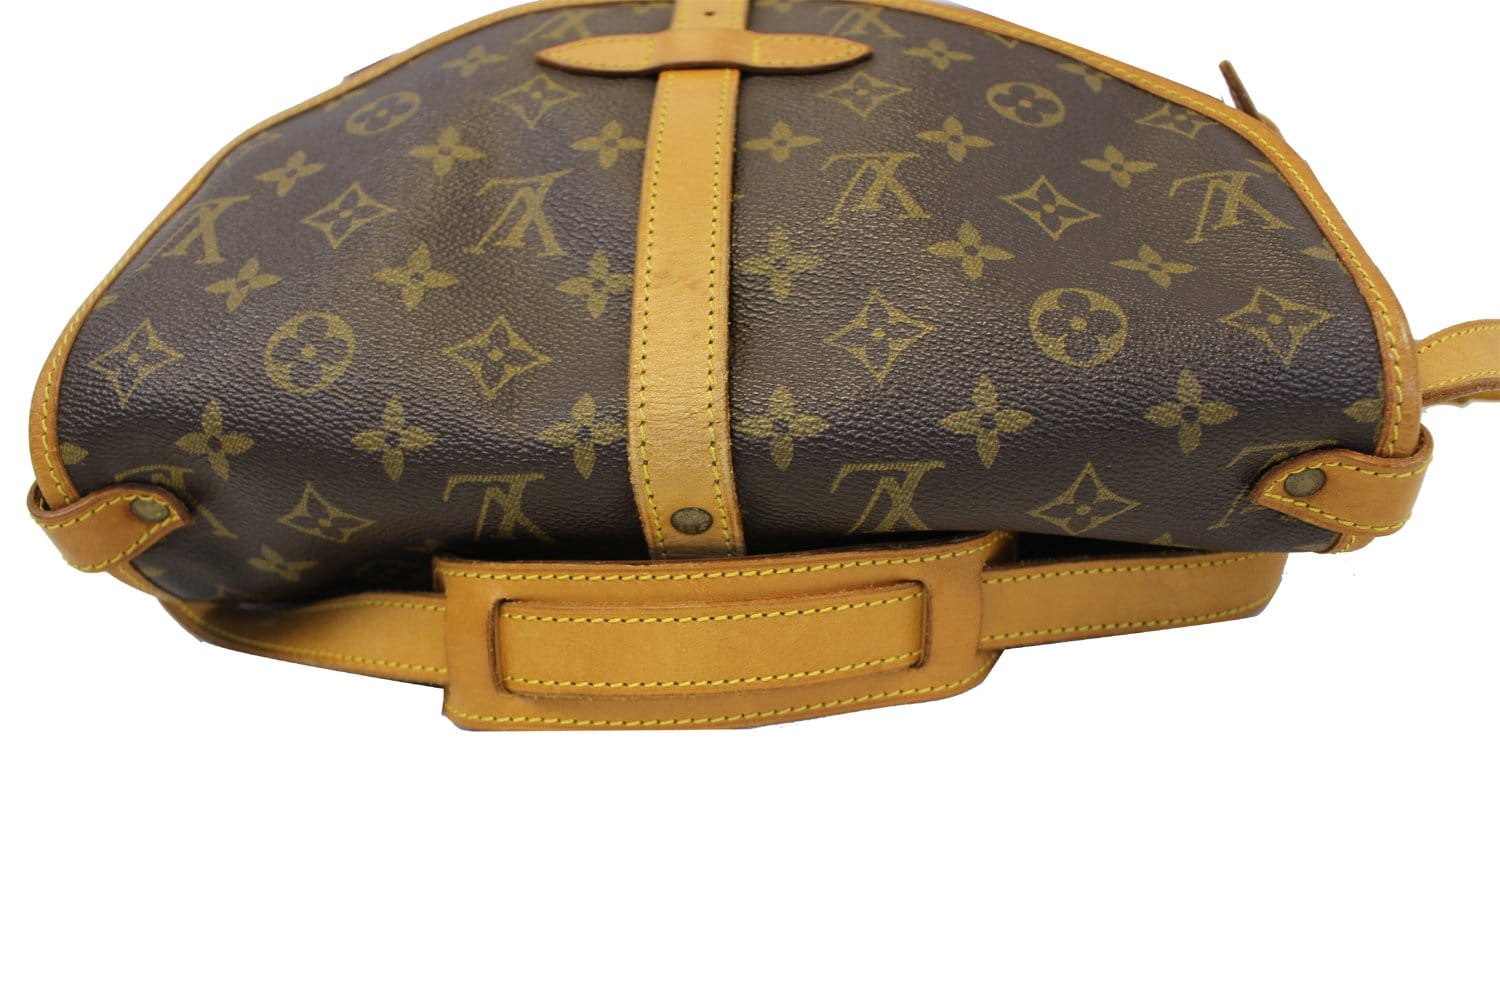 Louis Vuitton Saumur Shoulder bag 333301